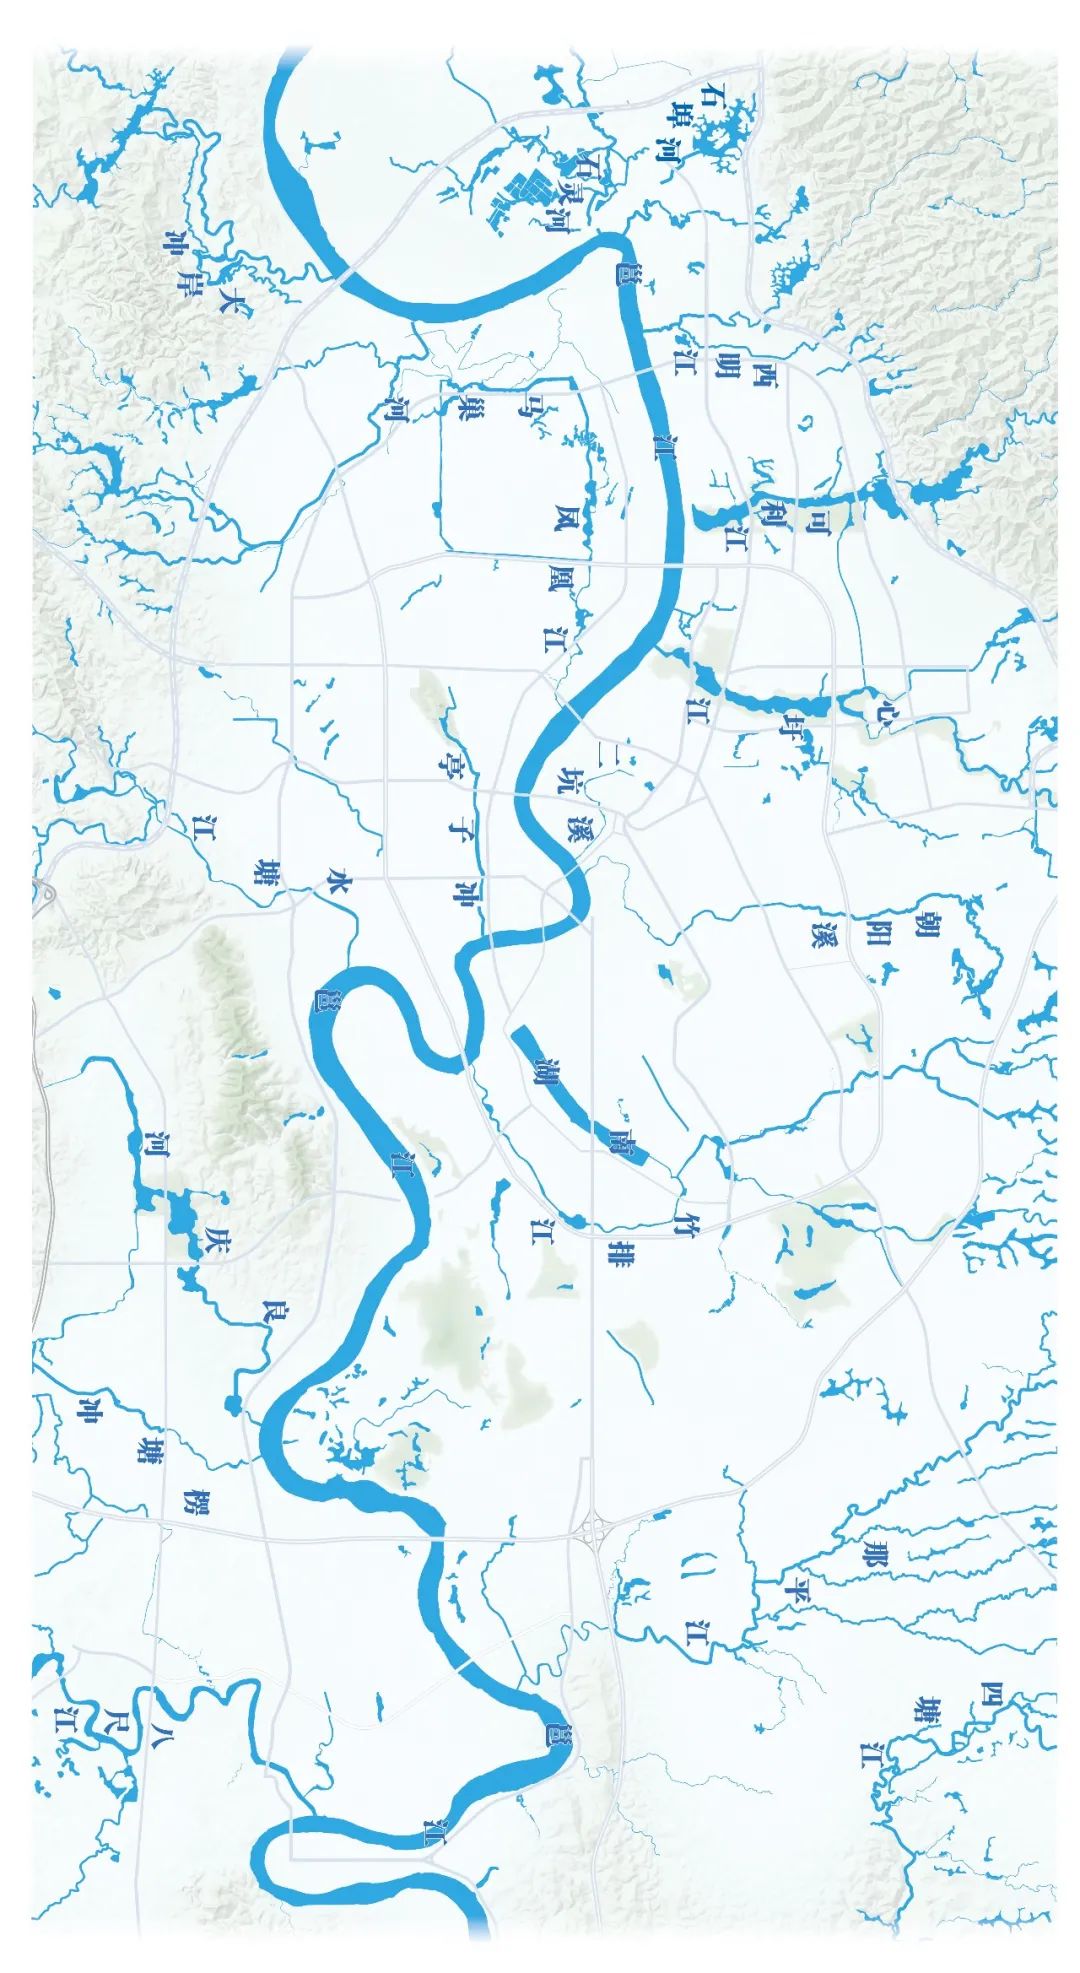 邕江 地图图片